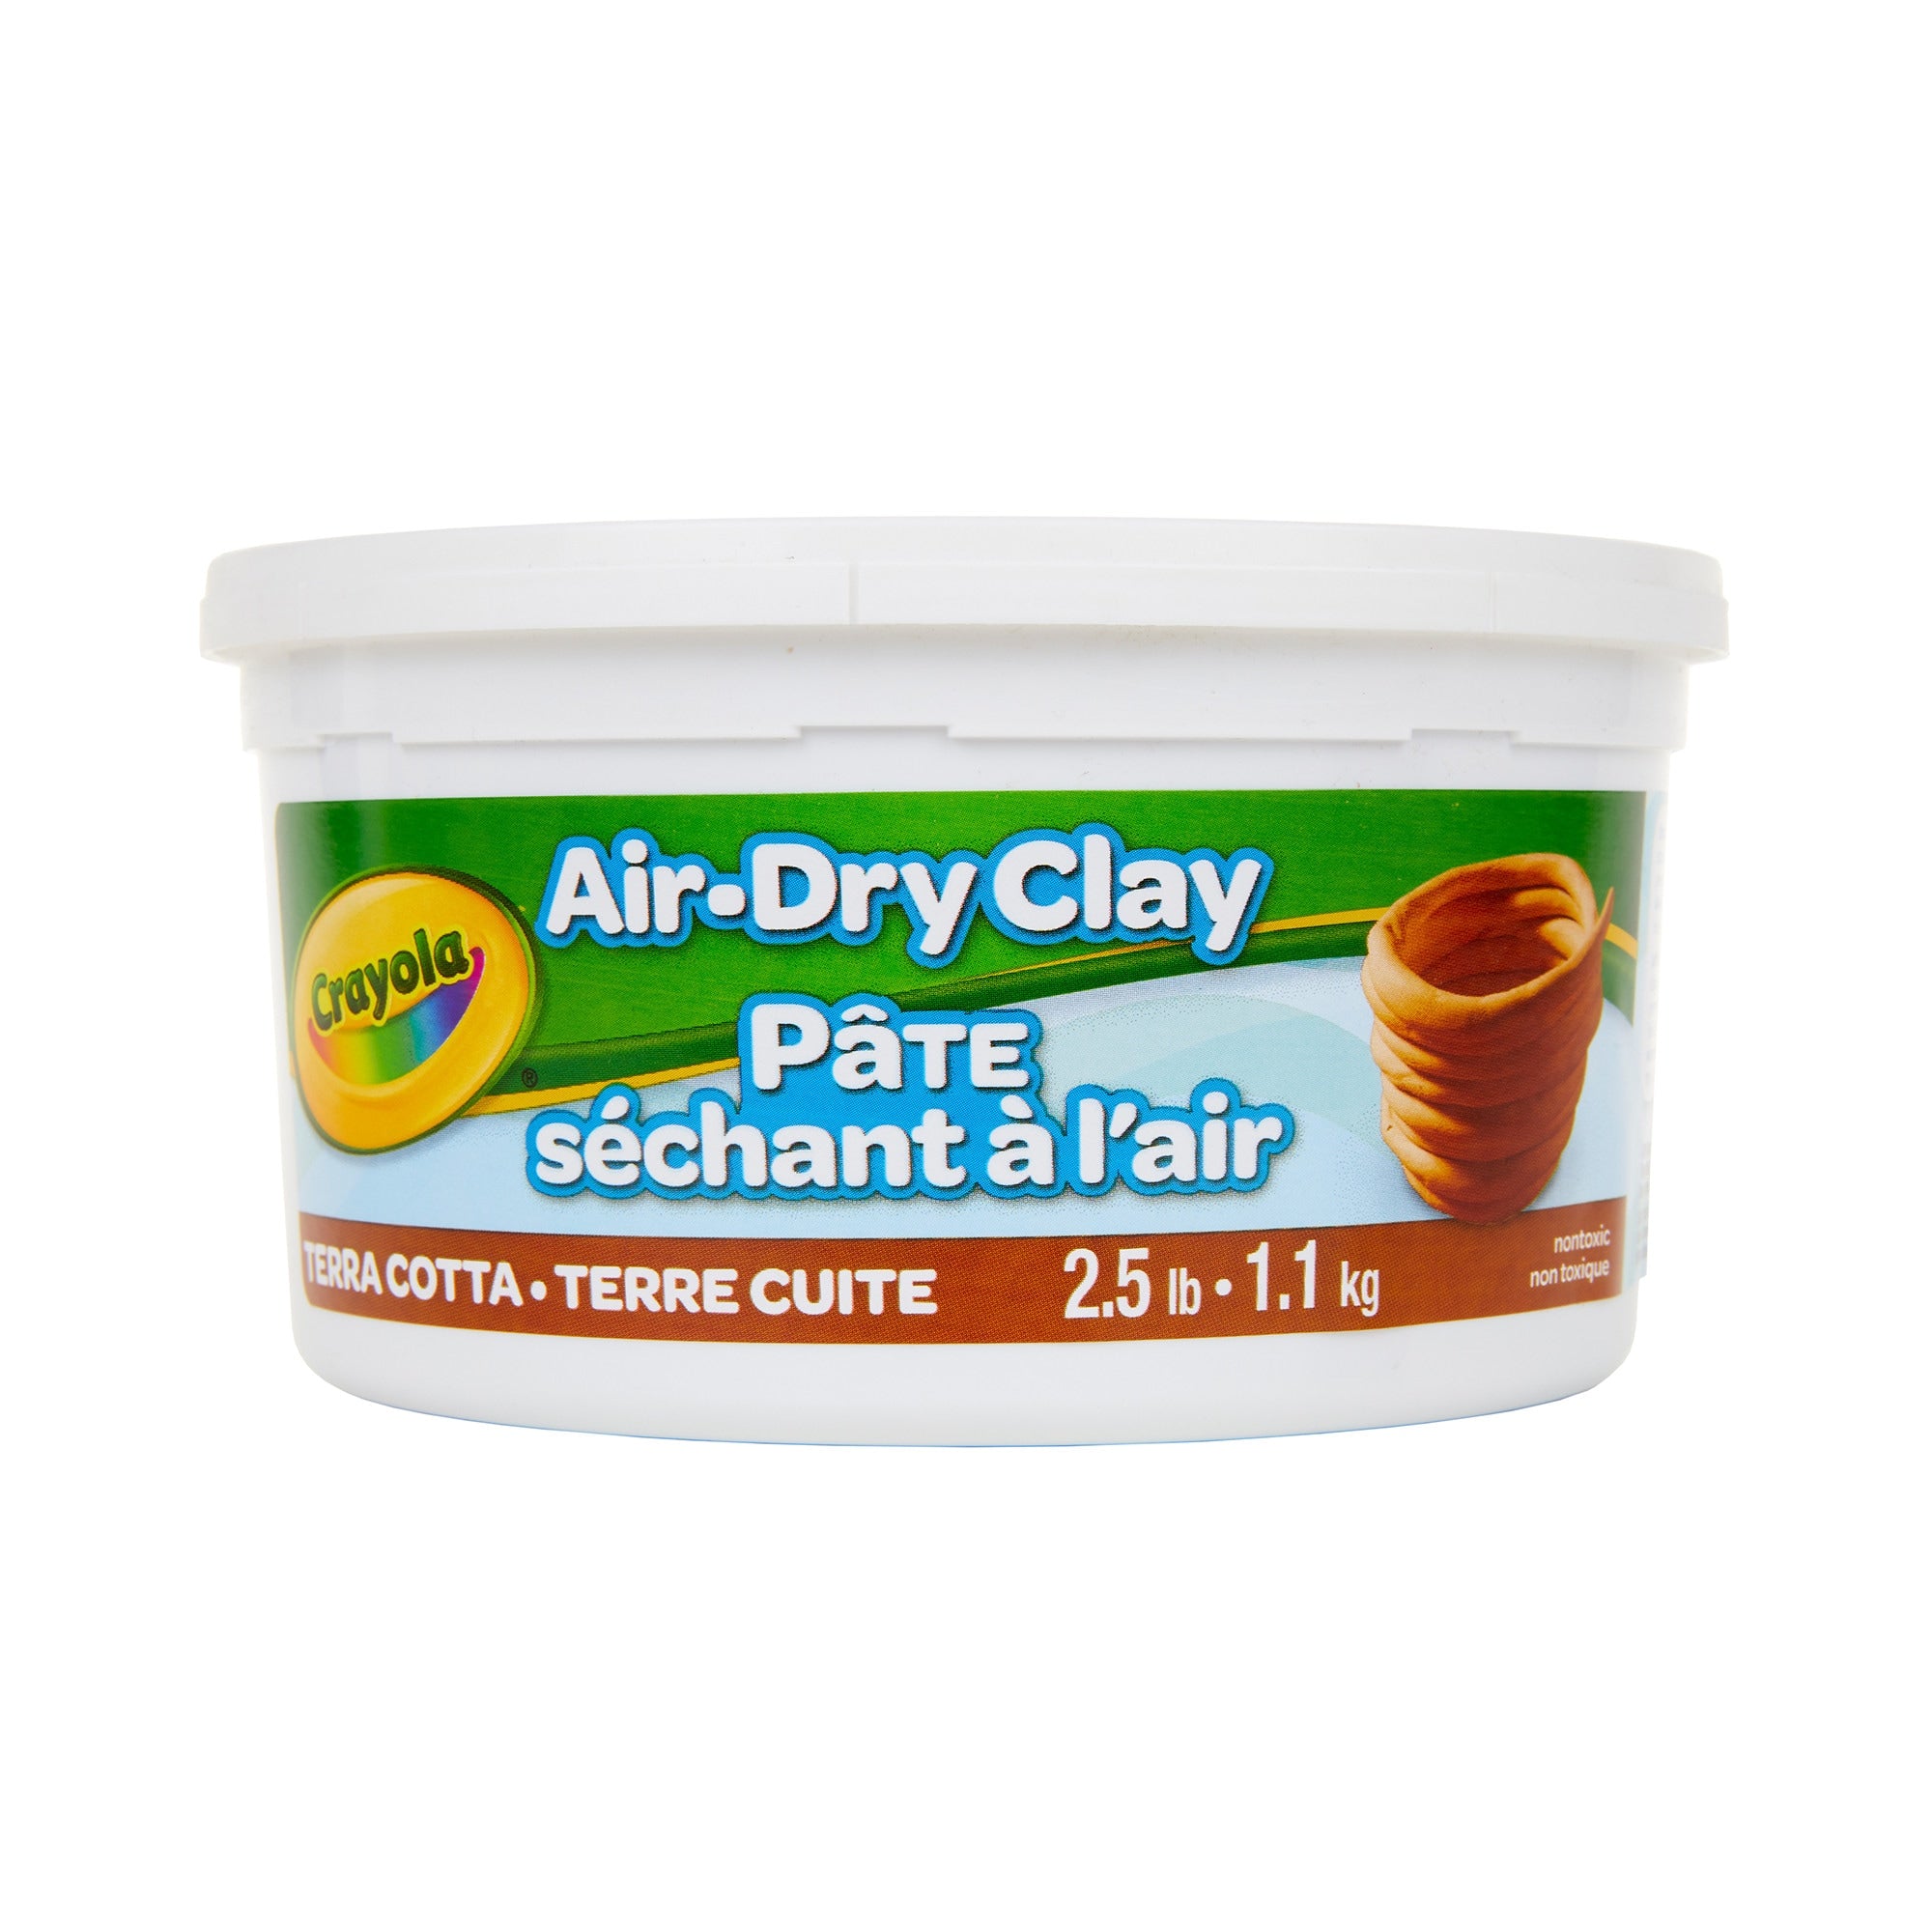 Crayola Air-Dry Clay 2.5 lb